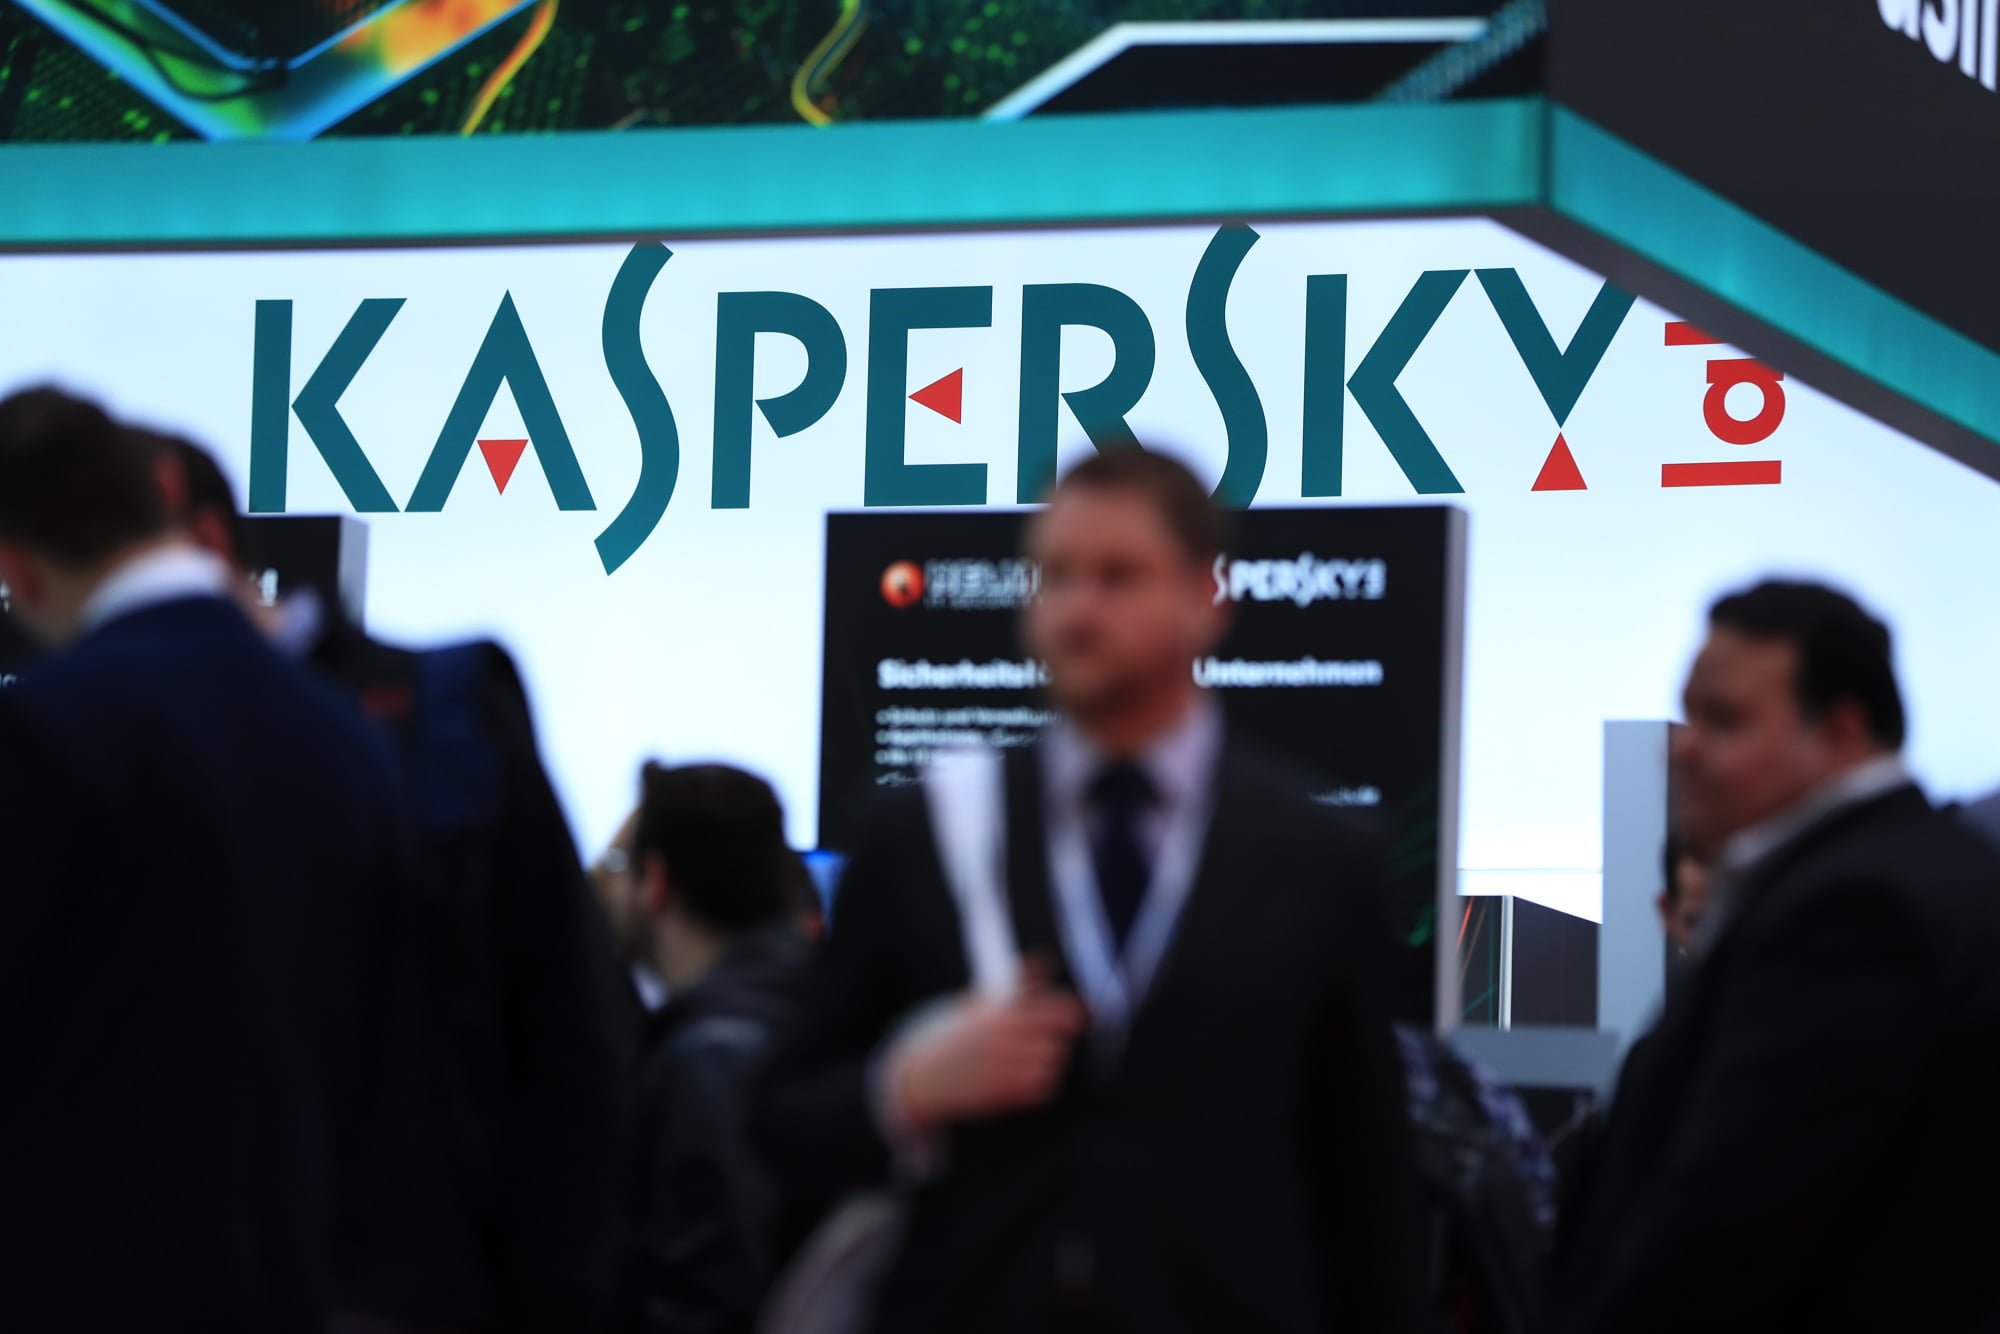 Kaspersky CEO'su Eugene Kaspersky, üst düzey çalışanların iPhone'larını casus yazılımların hedefi olarak açıkladı.